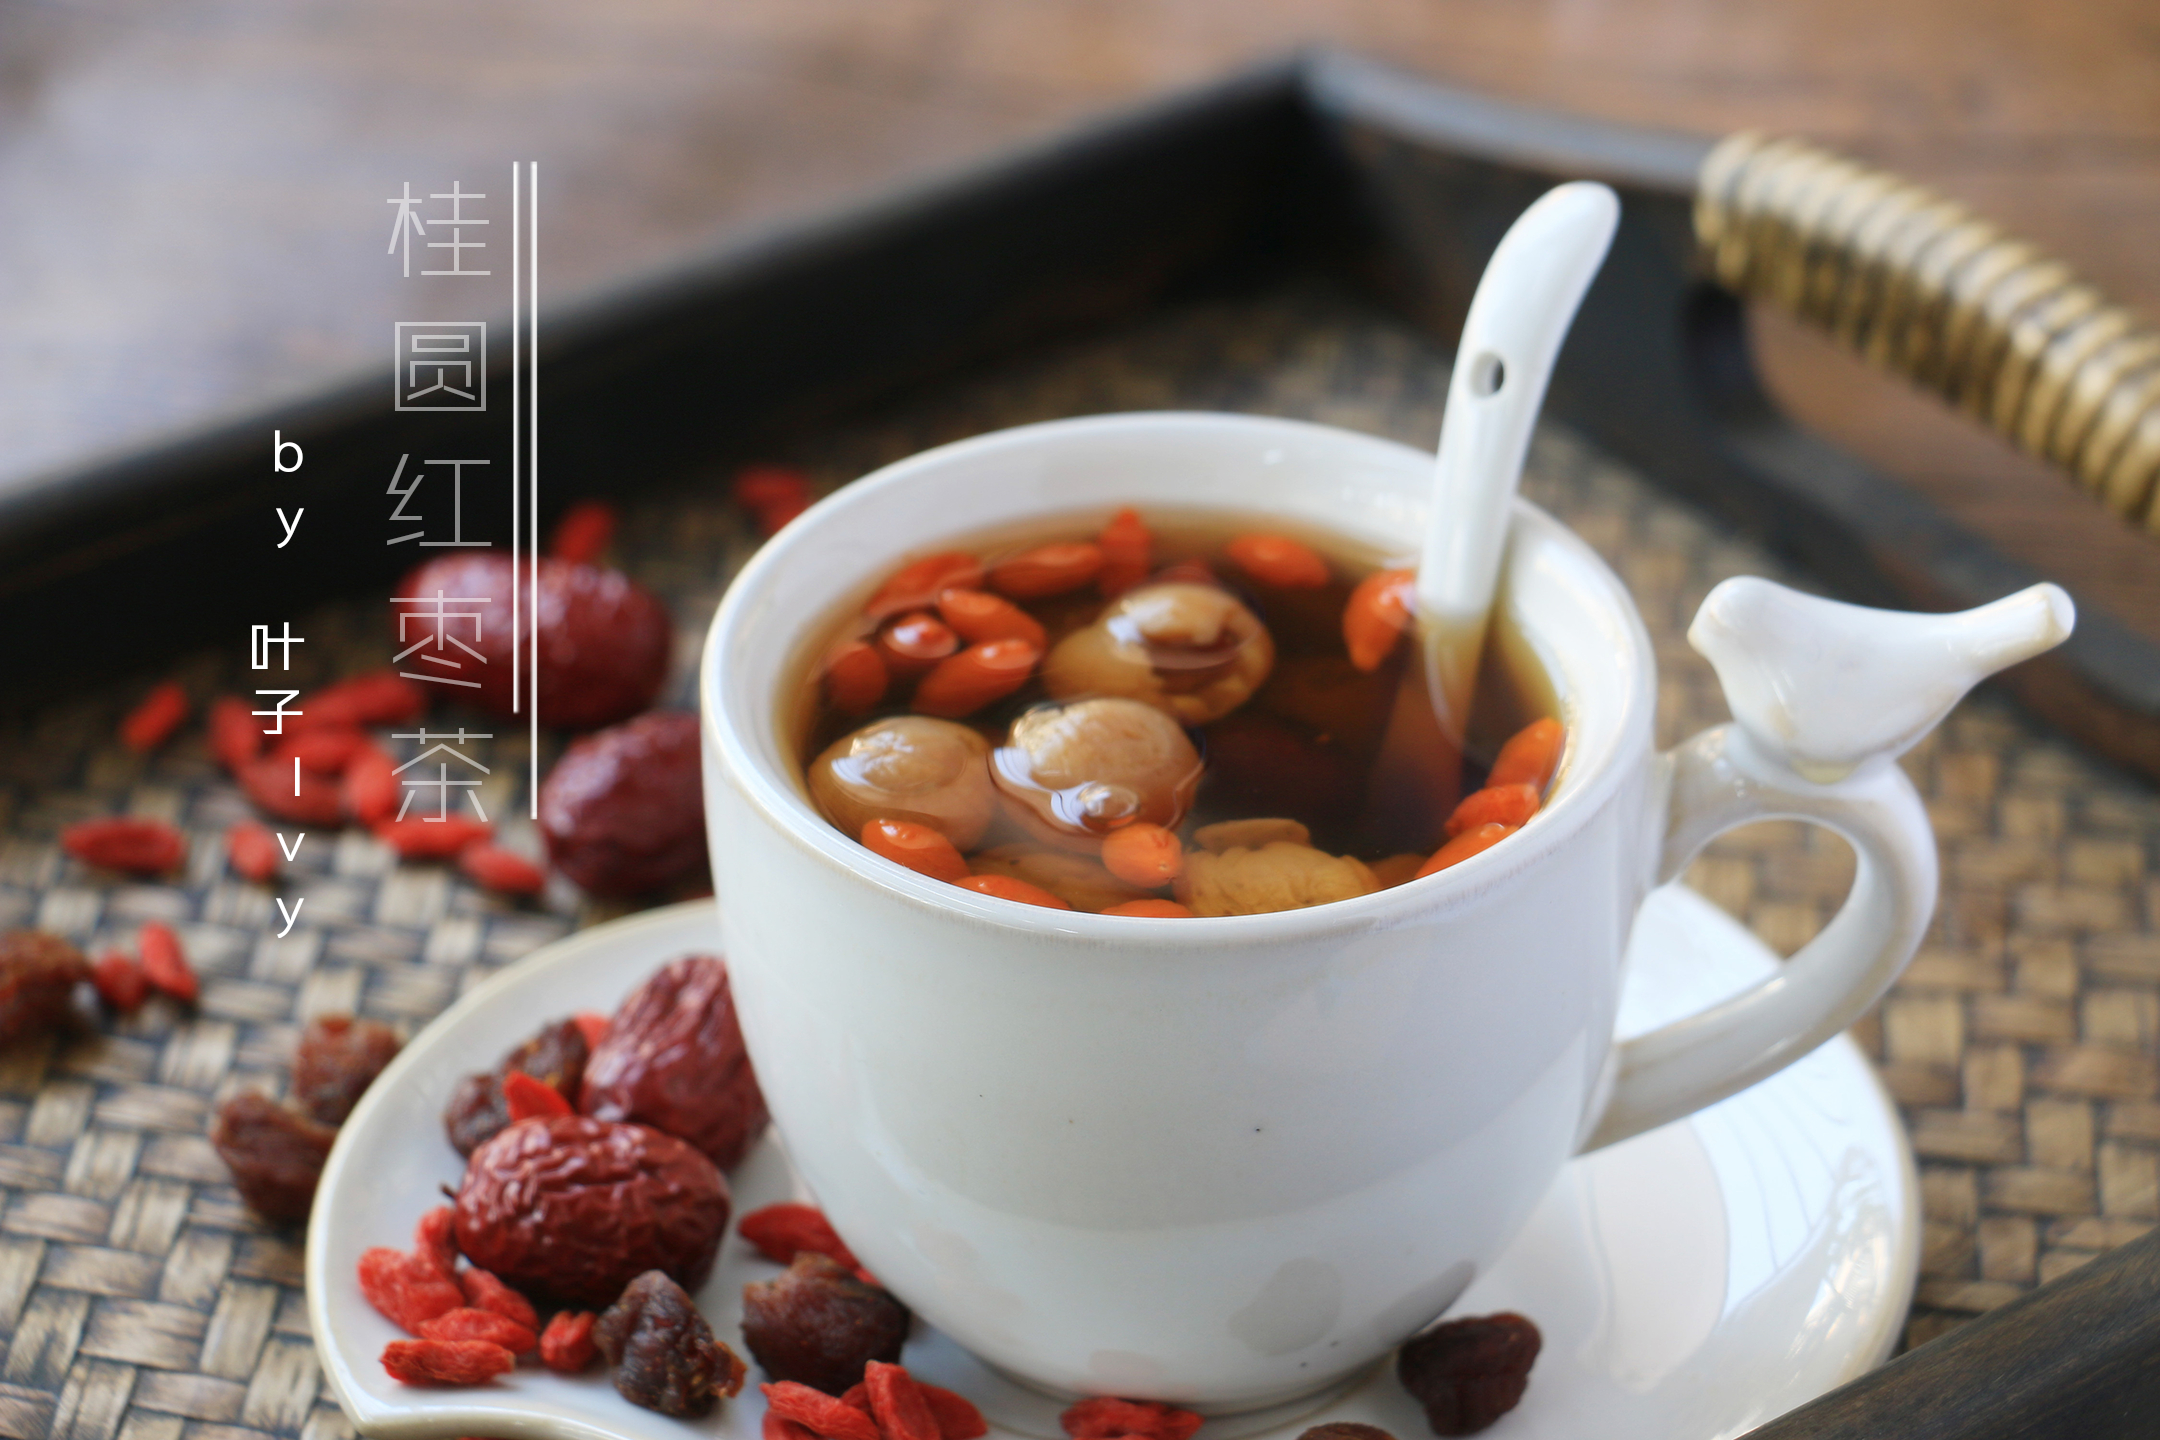 这道桂圆红枣枸杞茶不仅营养滋补,而且味道很好,三种食材都有甜味